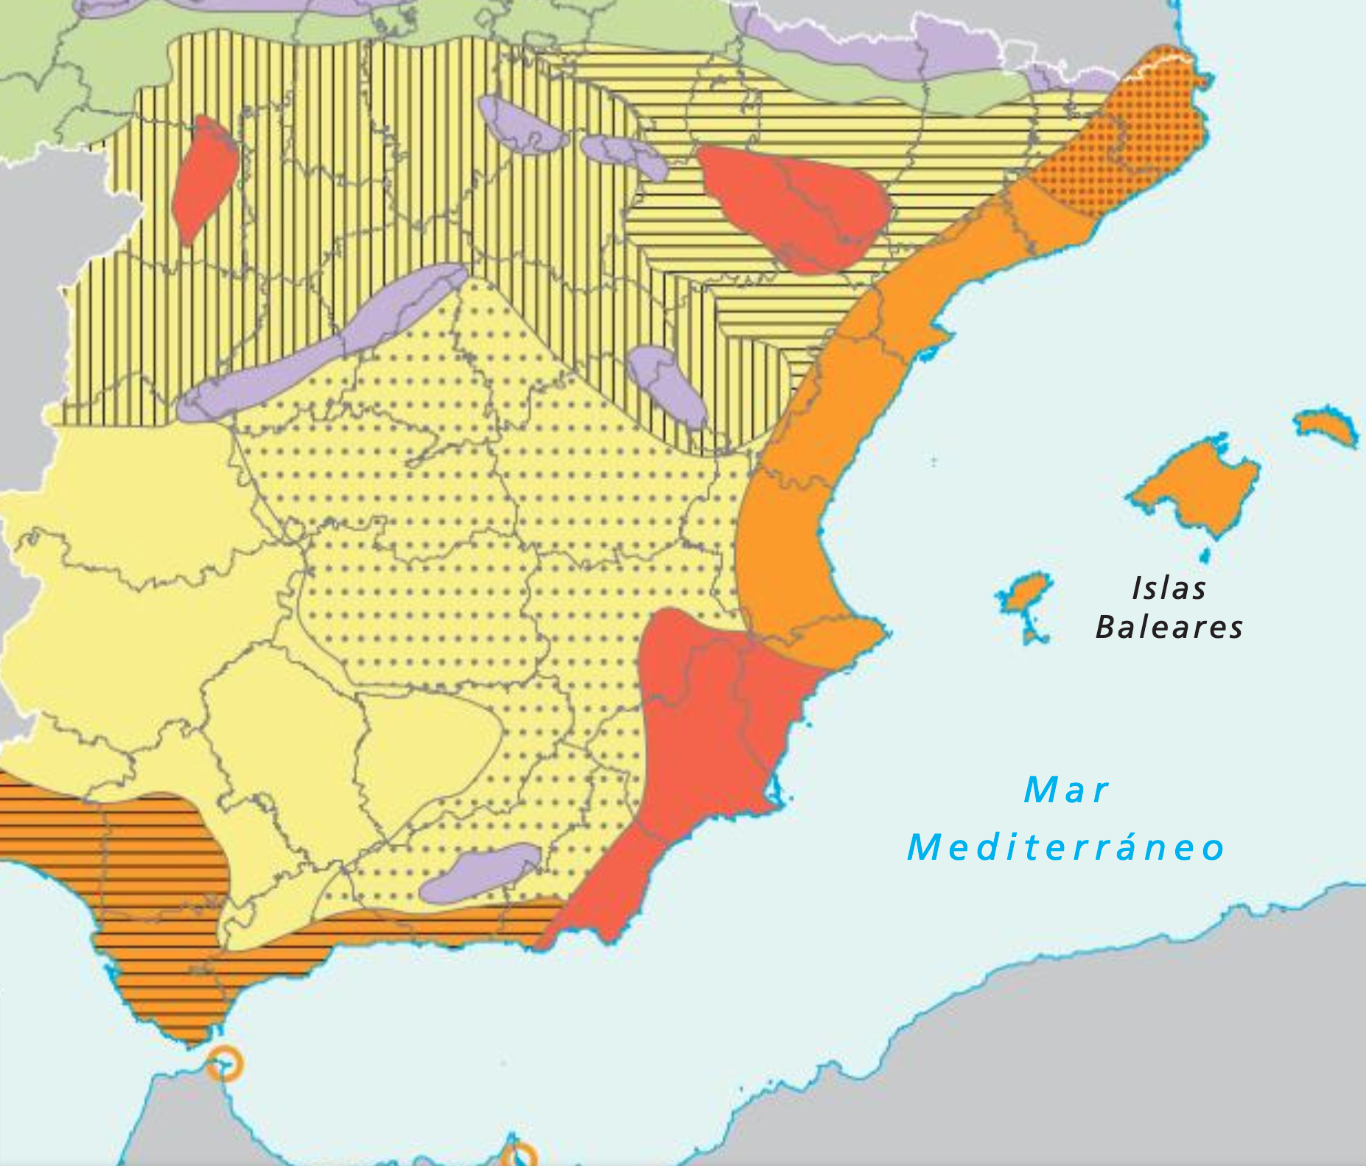 Álbumes 102 Imagen Mapa Mudo De La Cuenca Del Mediterraneo Alta